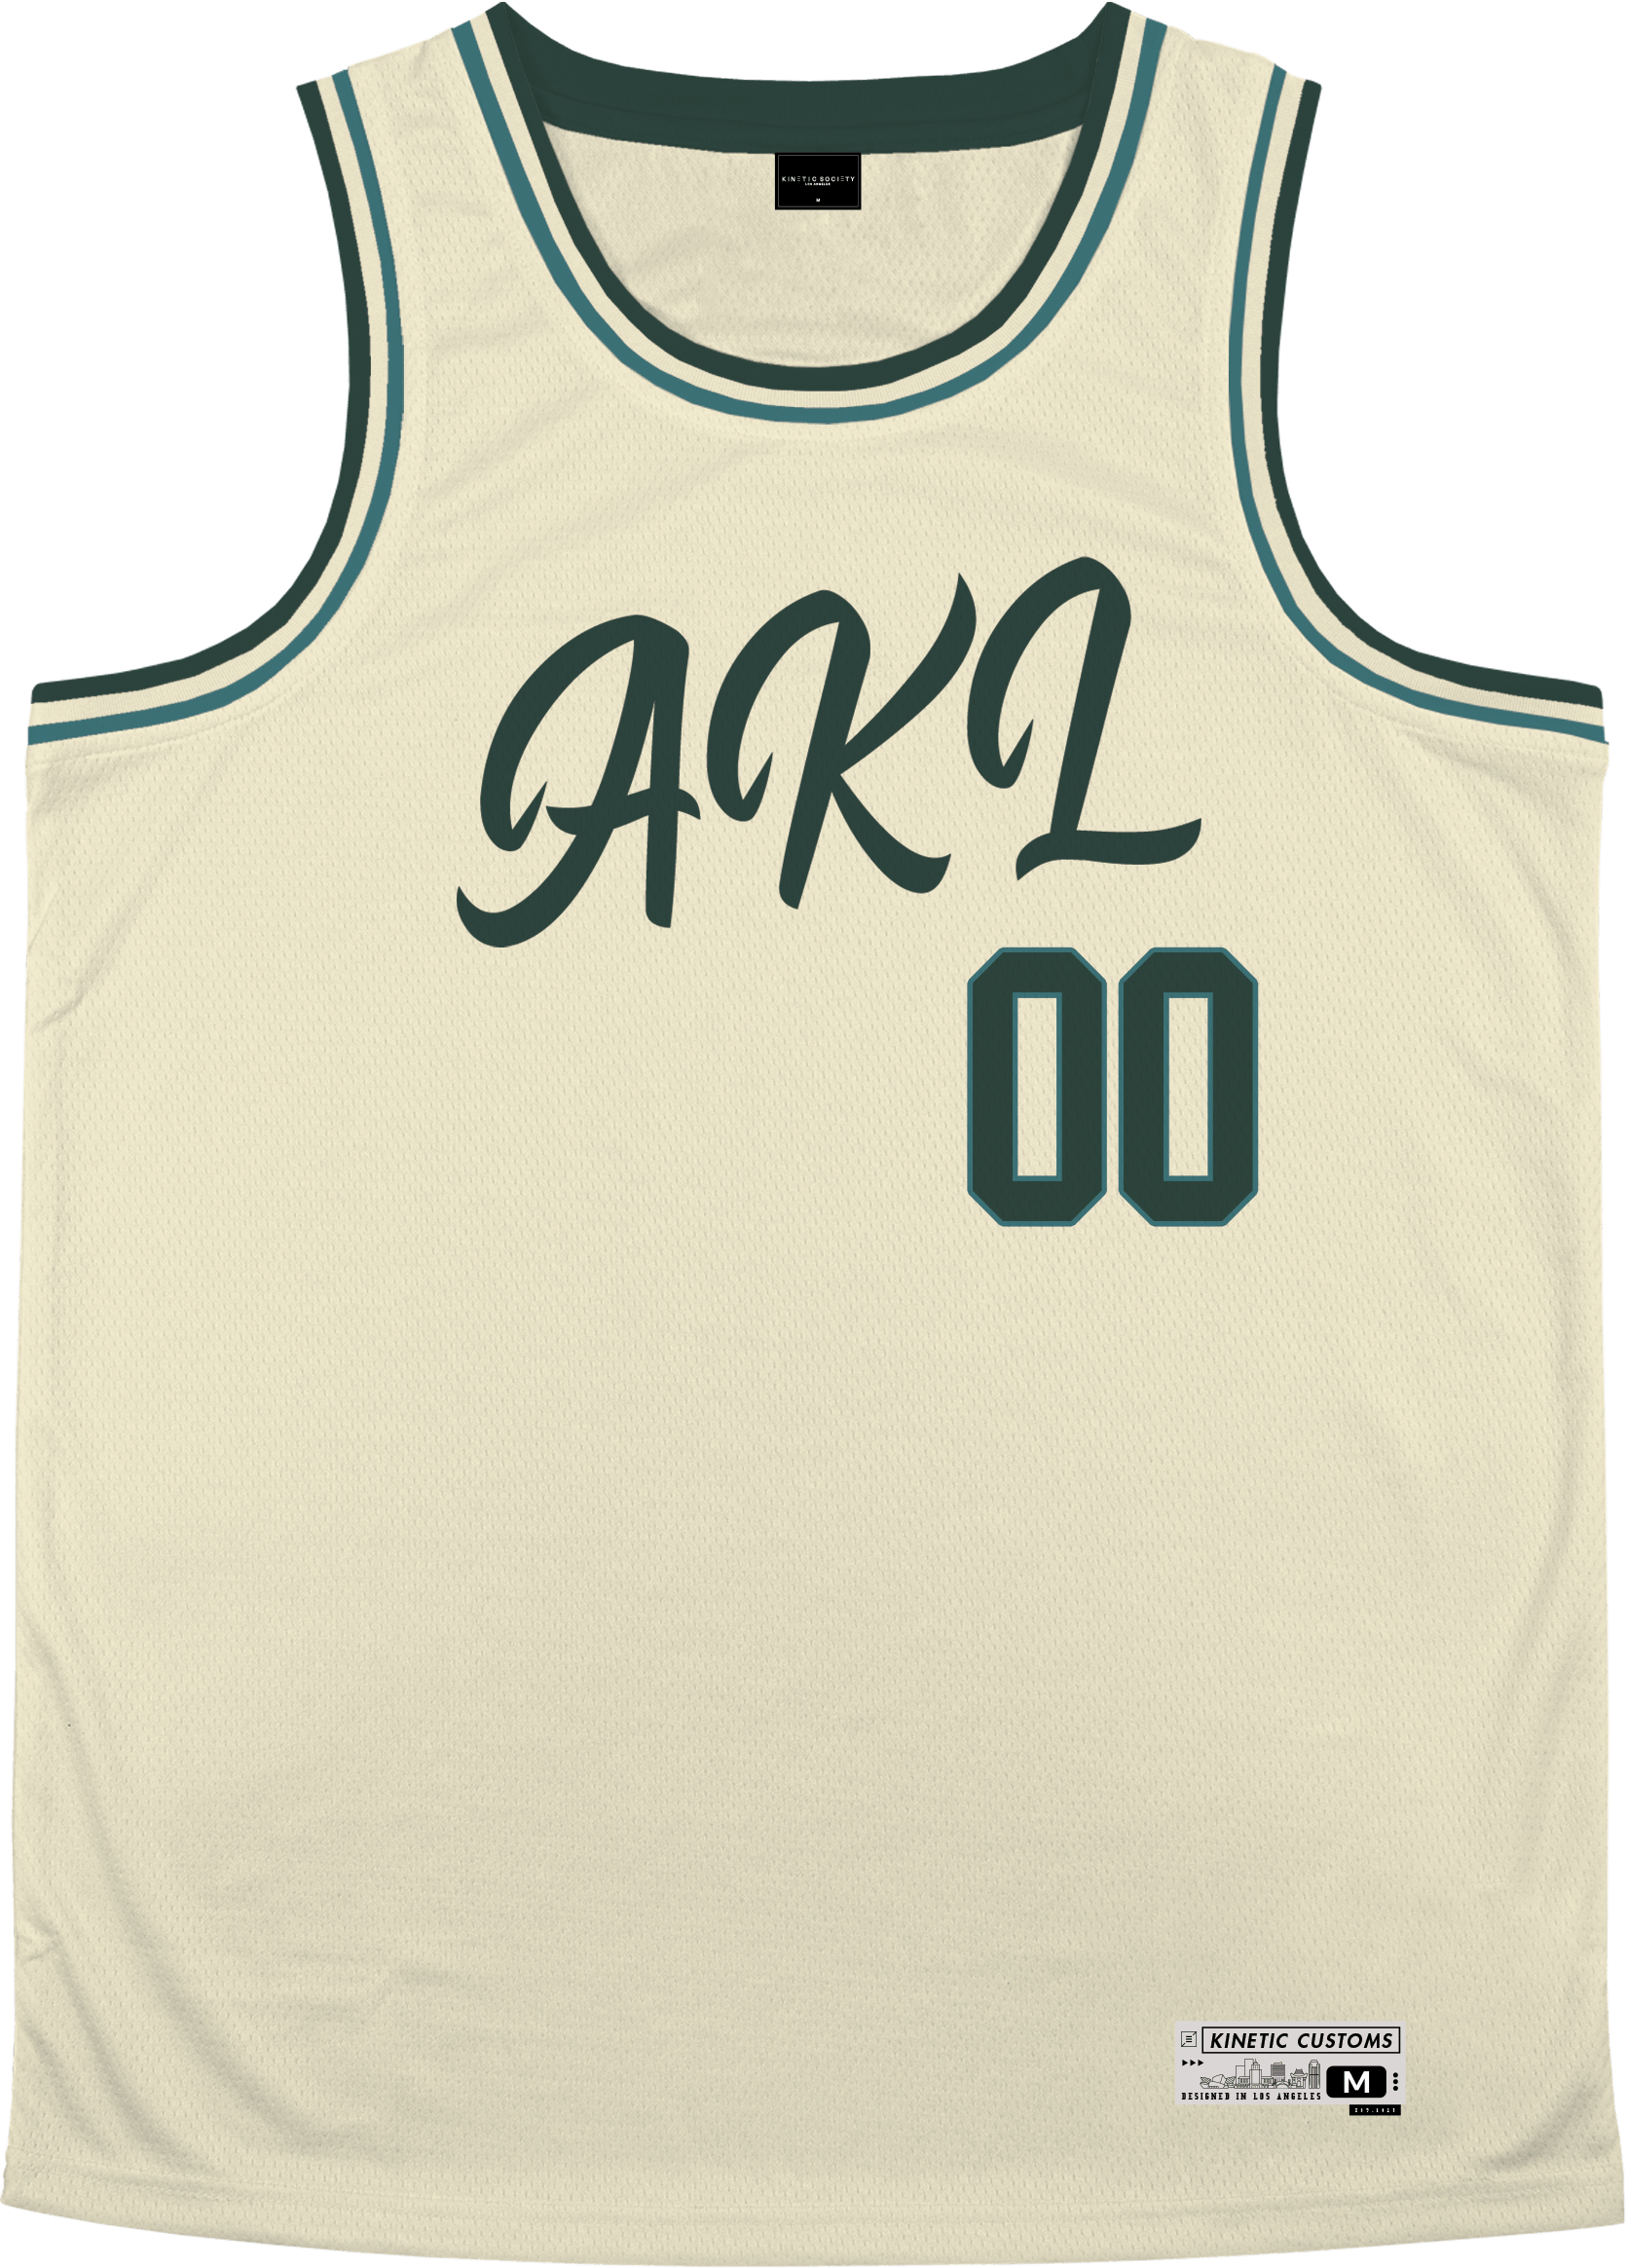 Alpha Kappa Lambda - Buttercream Basketball Jersey - Kinetic Society